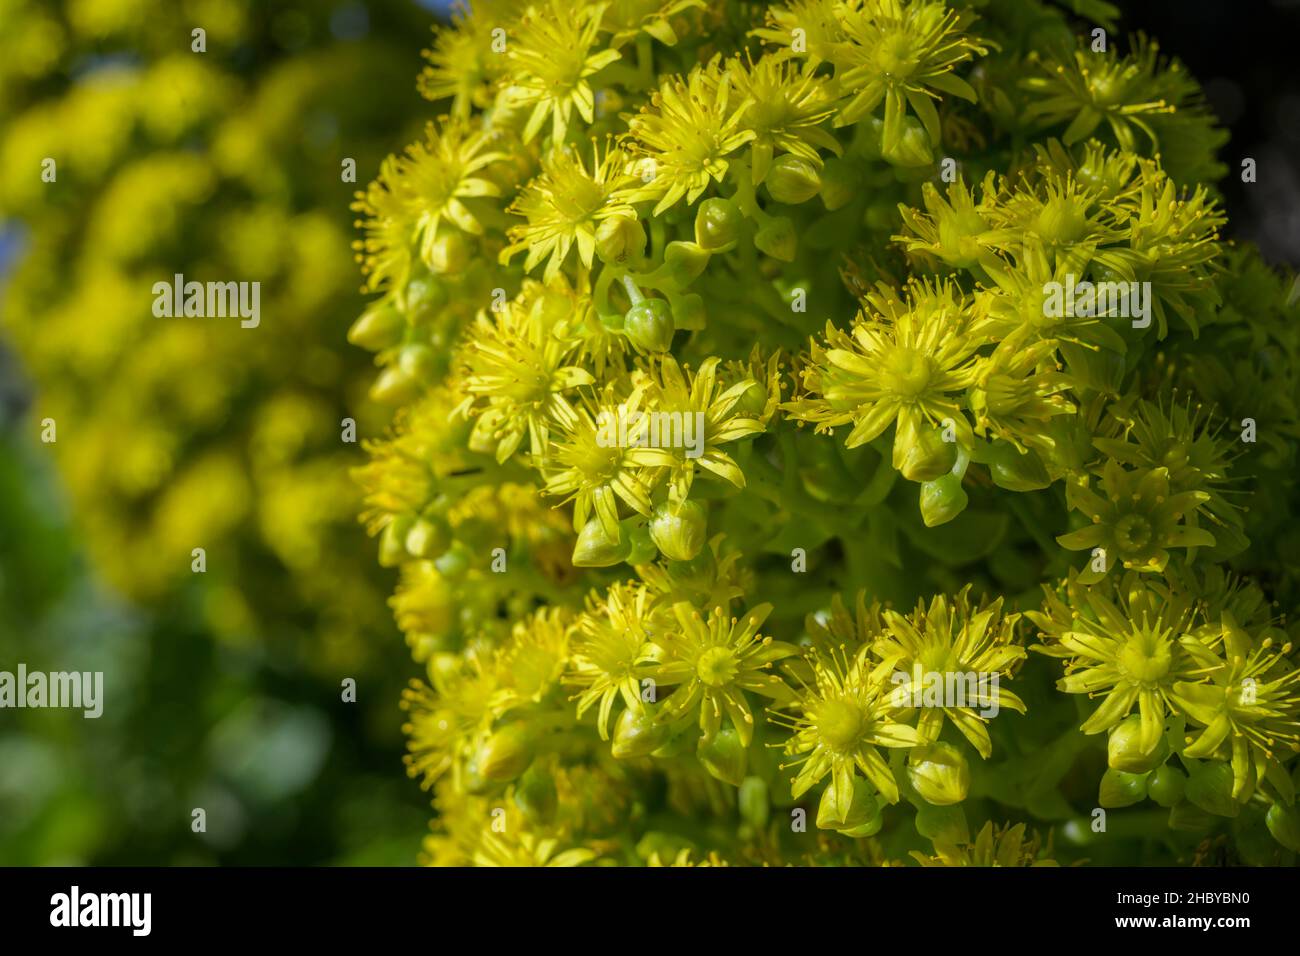 Tree aeonium aeonium arboreum hi-res stock photography and images - Alamy